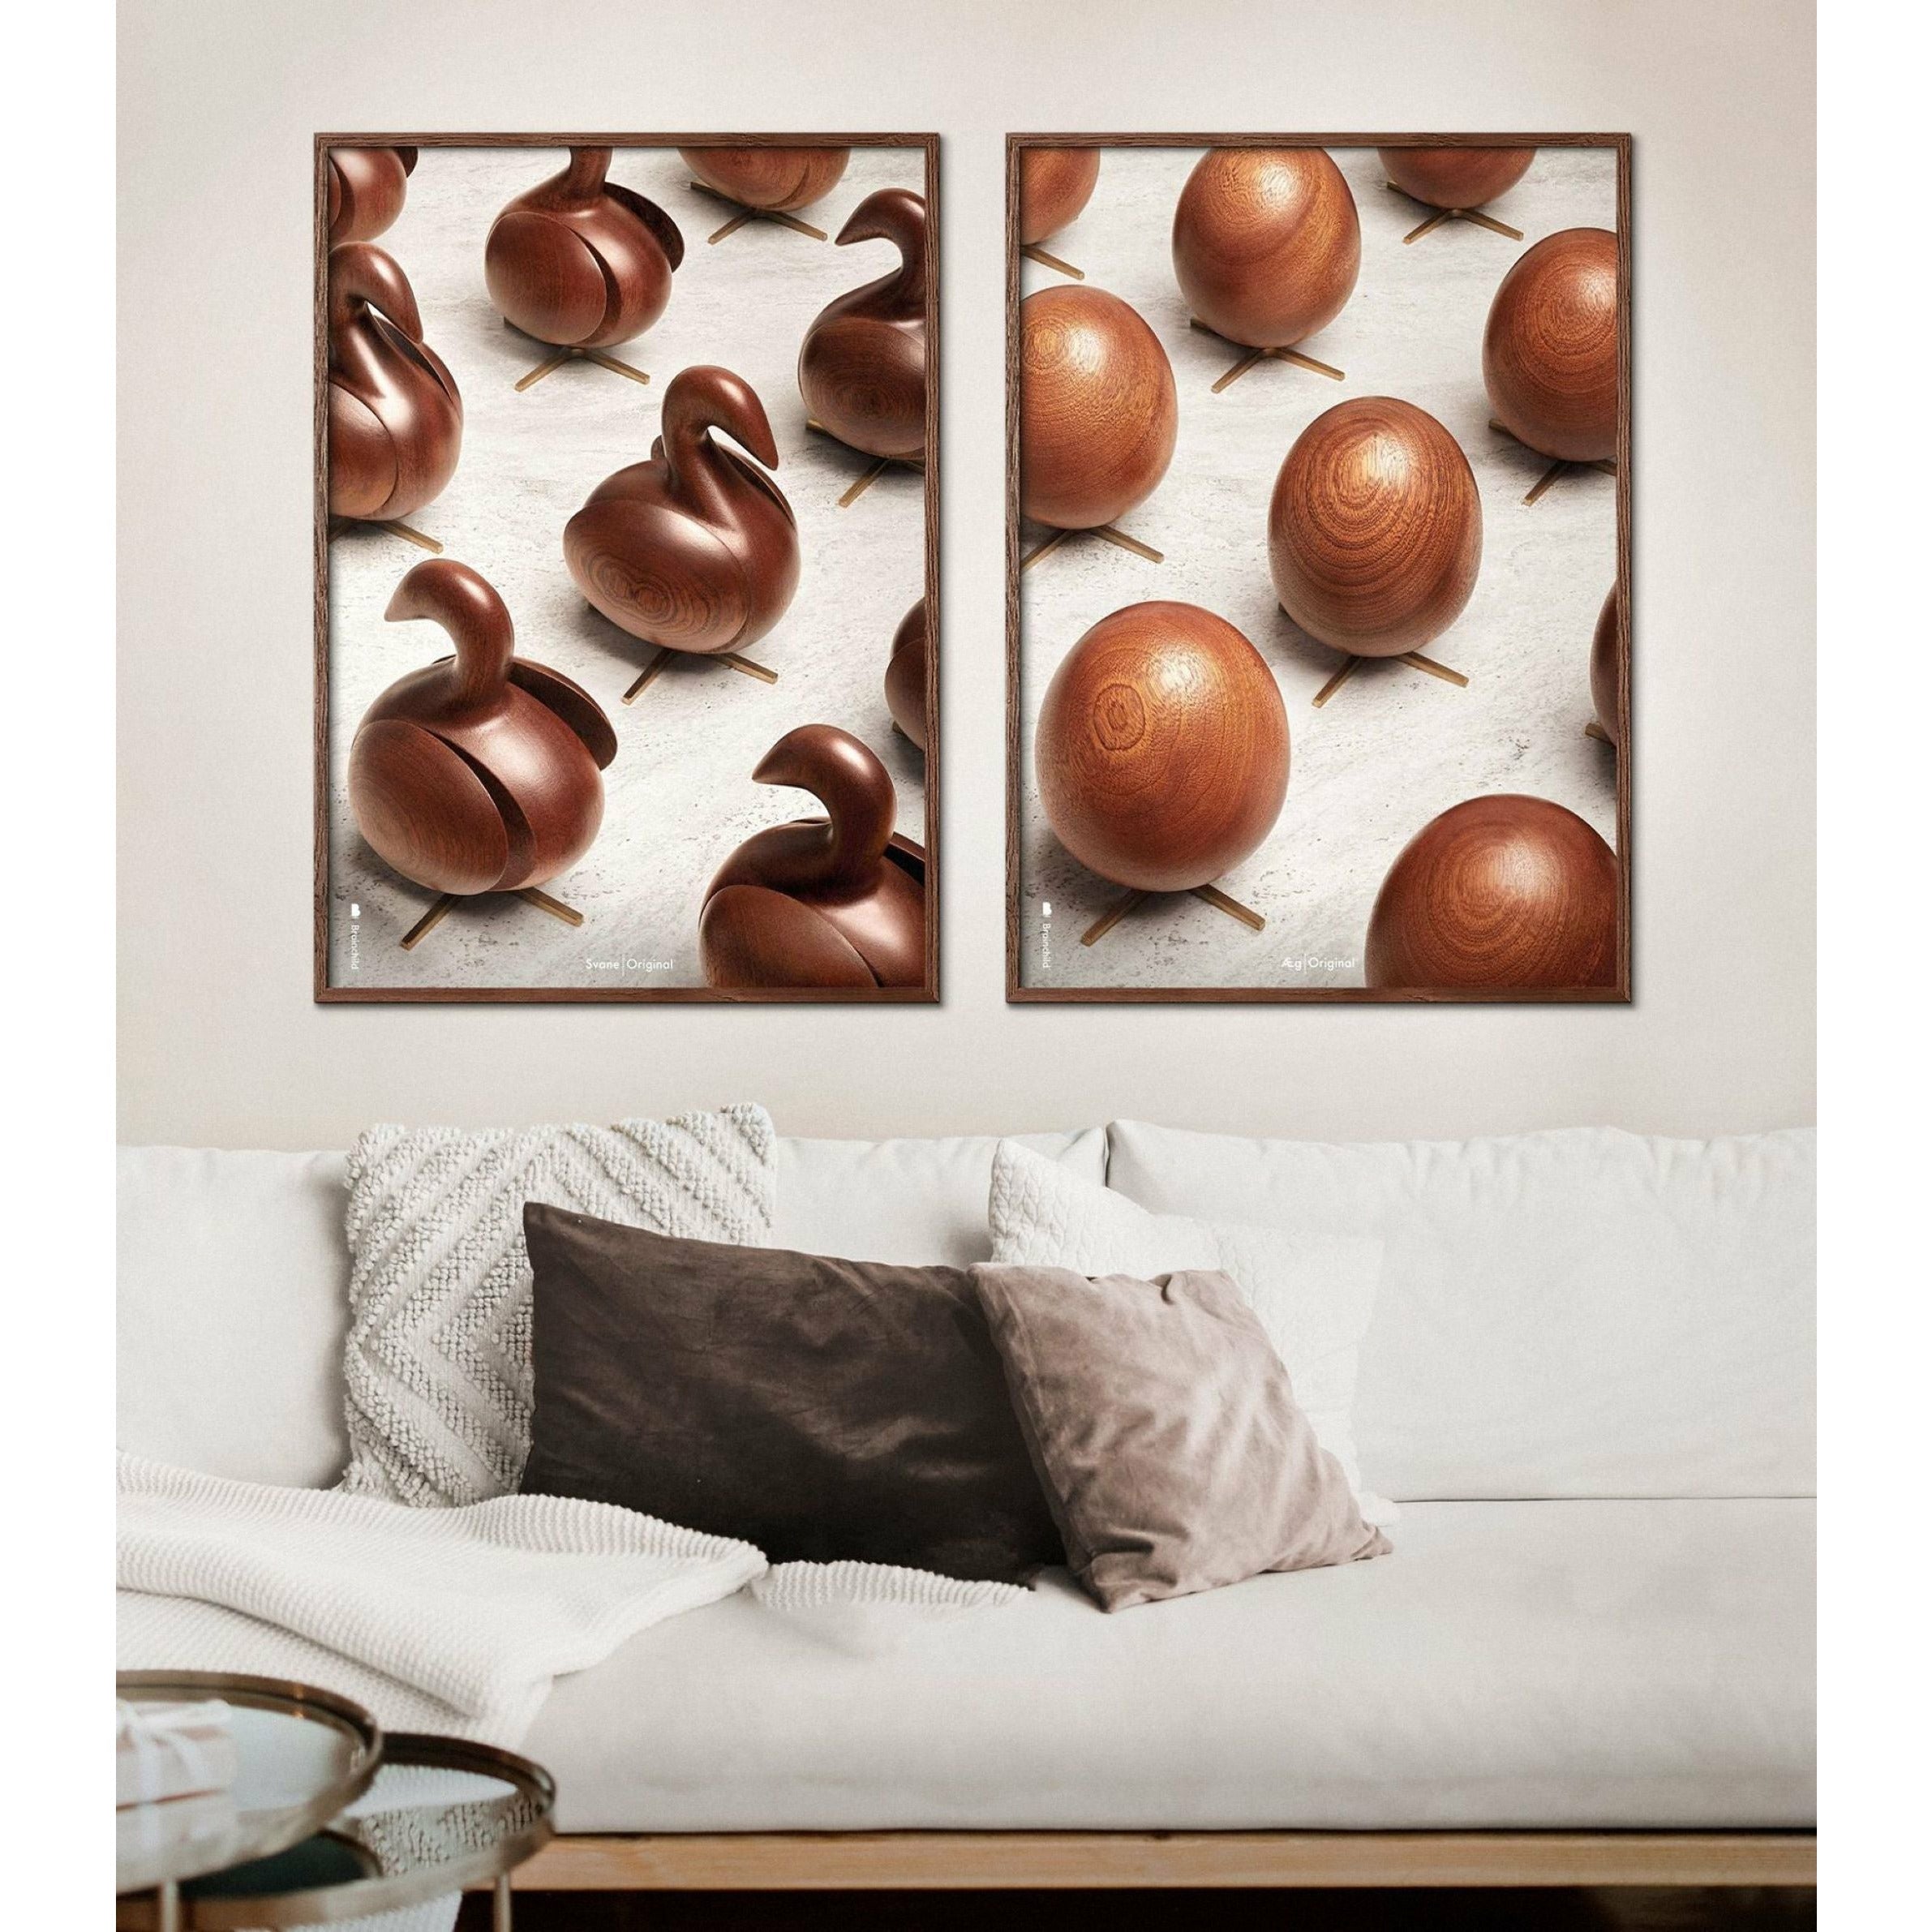 Poster per sfilata di uova di prima cosa, cornice color ottone, 30 x40 cm